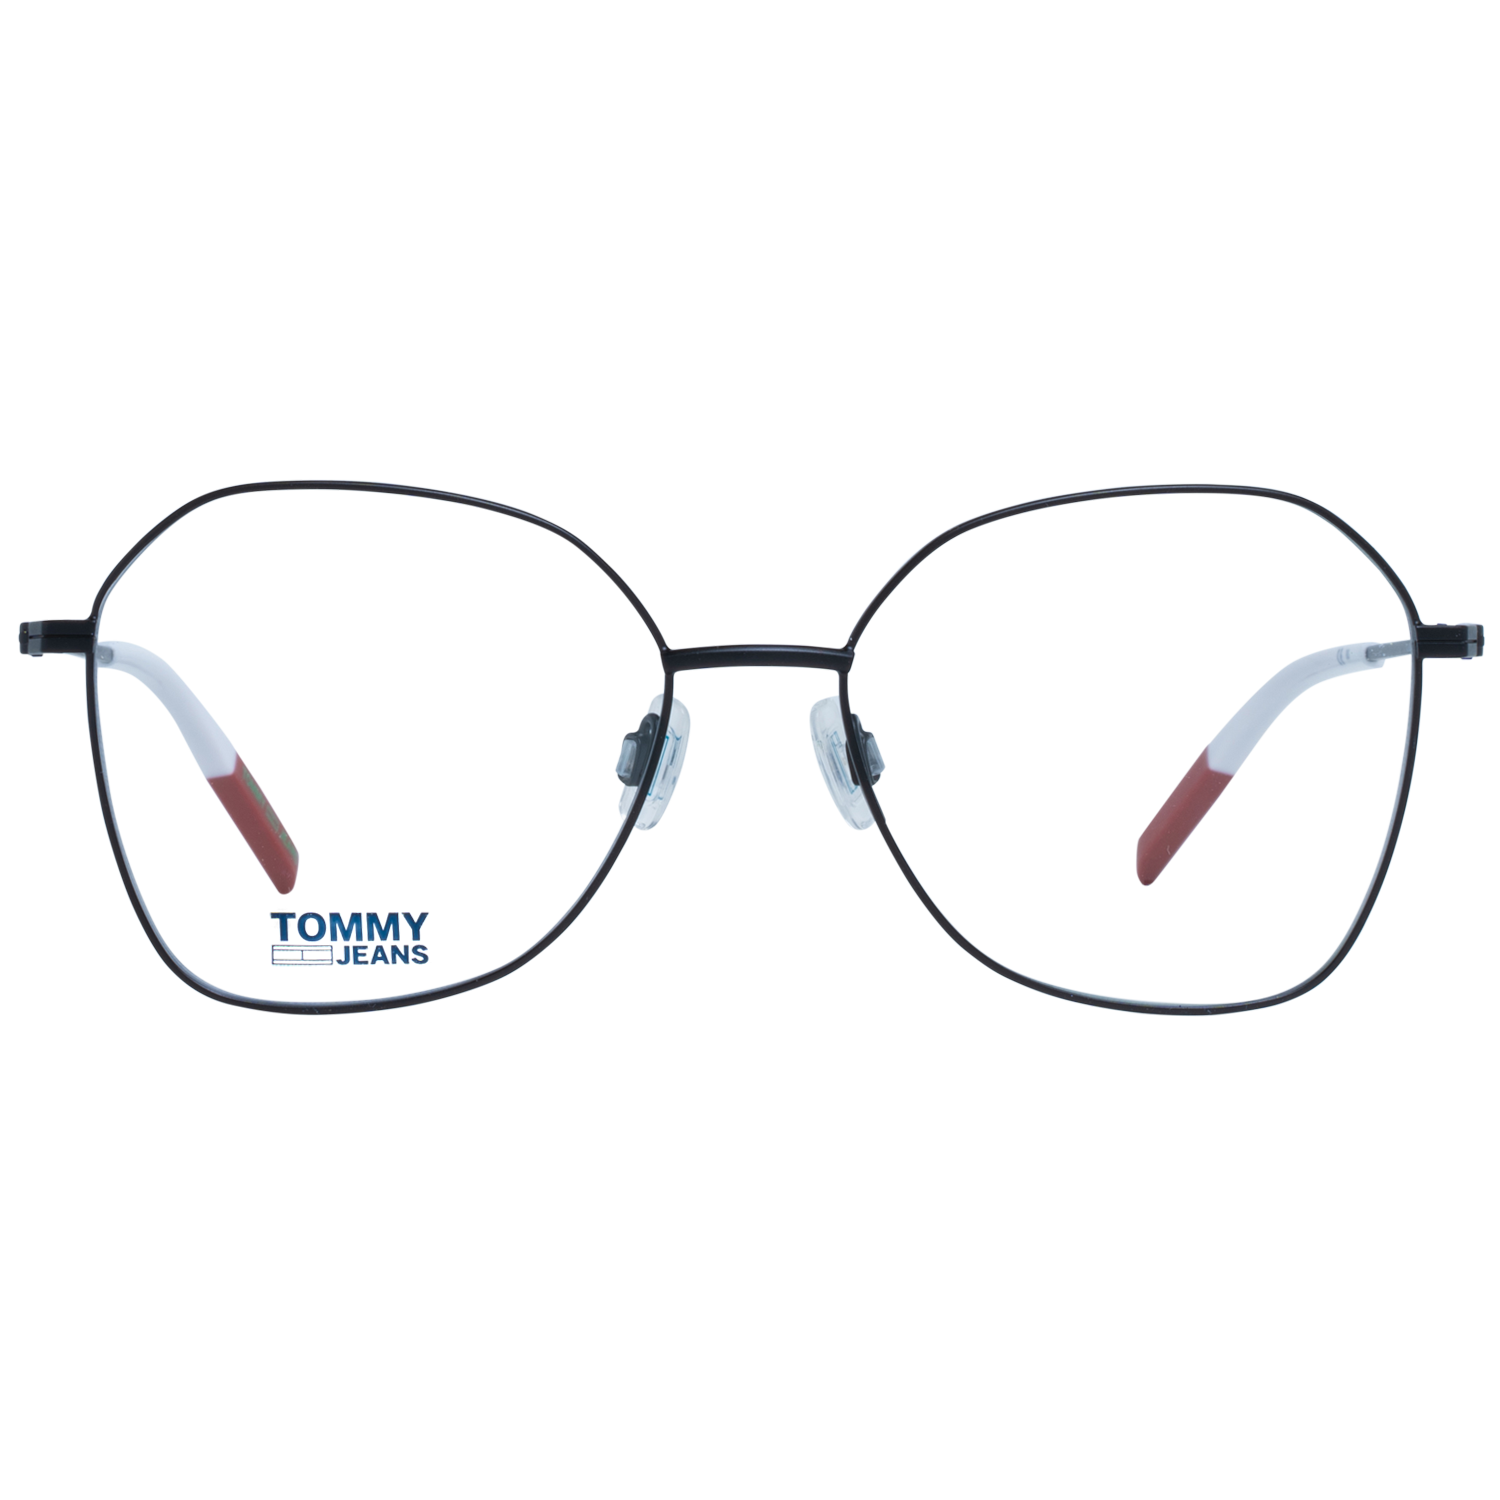 Tommy Hilfiger Frames Tommy Hilfiger Optical Frame TJ 0016 003 54 Eyeglasses Eyewear UK USA Australia 